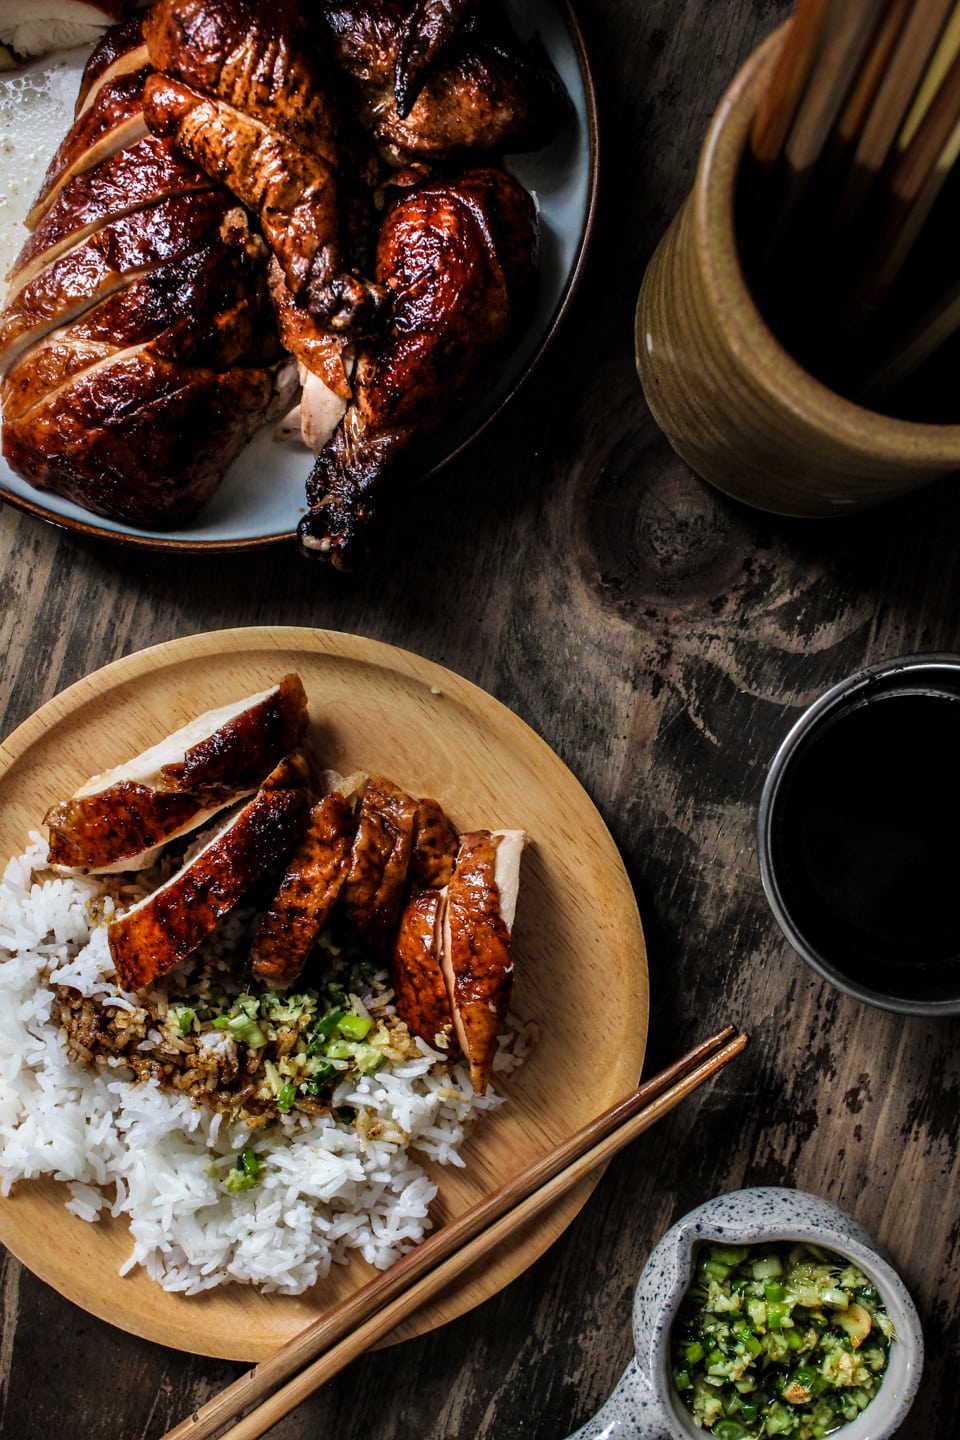  Pekingi csirkét szolgálnak fel egy tányéron rizzsel és gyömbéres mogyoróhagymamártással a tetején